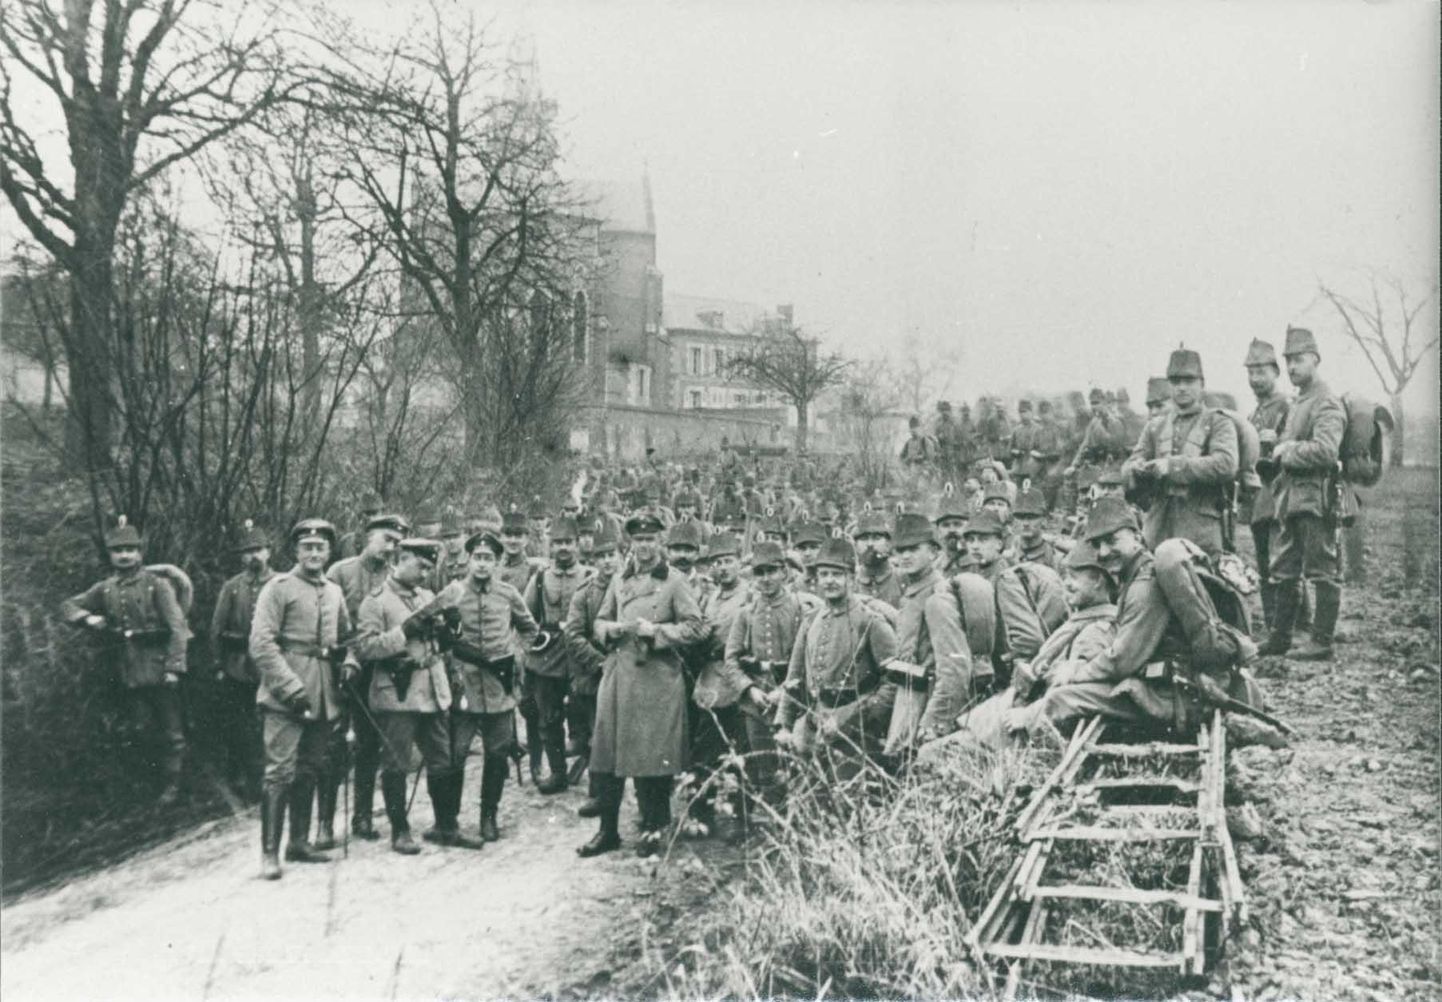 Sel pildil on esimeses maailmasõjas Saksa sõjaväes olnud taanlased. Filmi «Erna läheb sõtta» taustanäitlejad kannavad samuti esimese maailmasõja aegset vormiriietust.